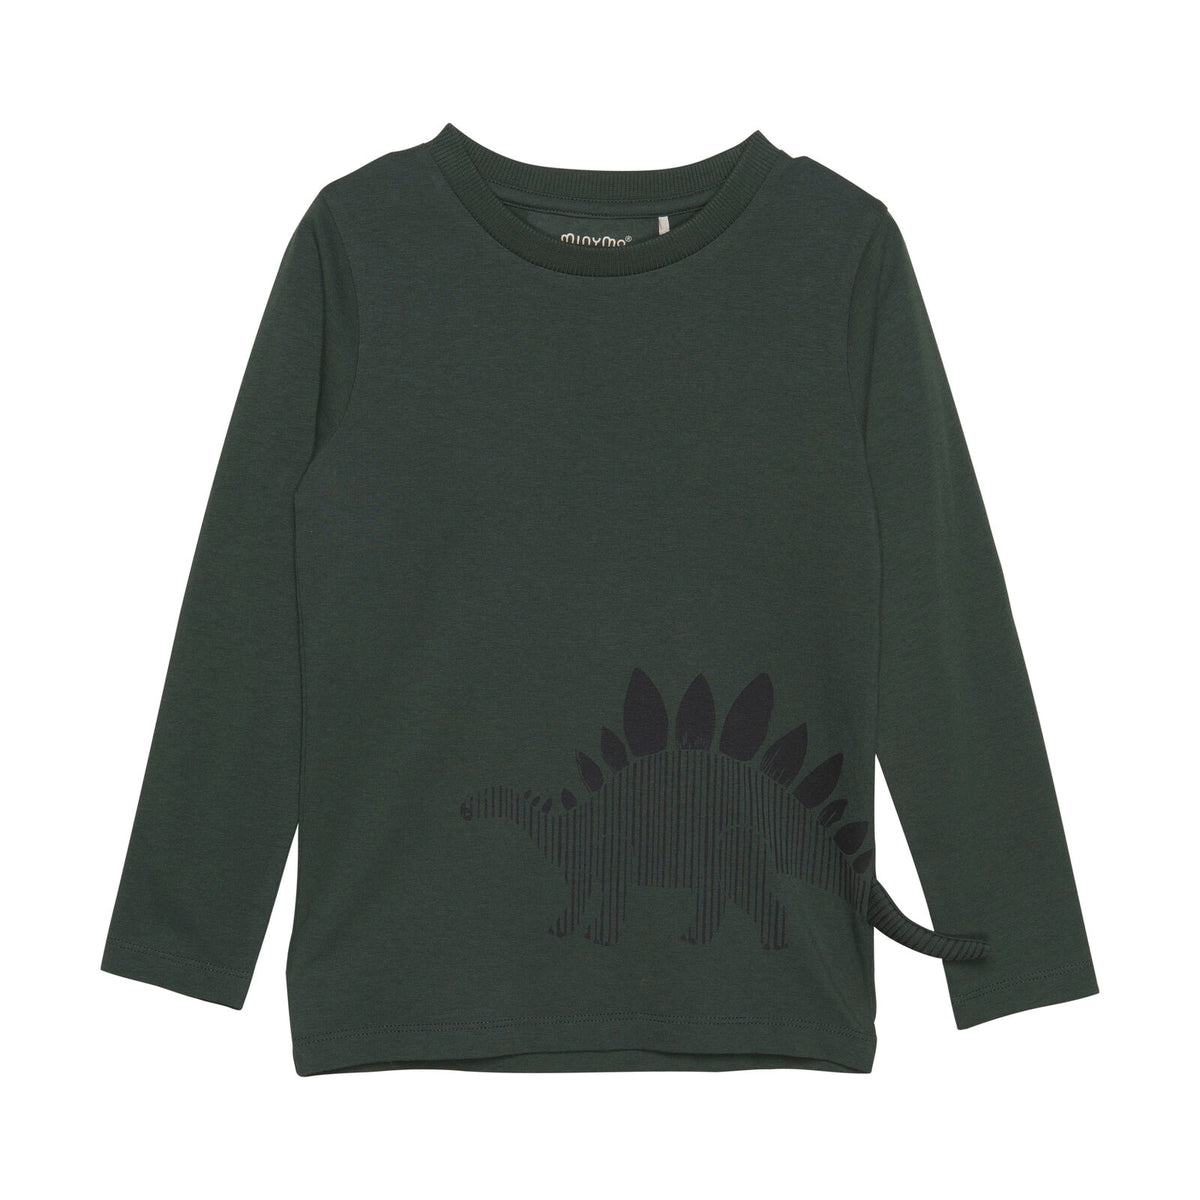 Das Shirt hat einen Dinosaurier aufgedruckt, wo das Schwanzende über das Shirt reicht, kleiner 3 D Effekt. Ein sehr angenehmes Shirt für alle Dinosaurier-Fans.